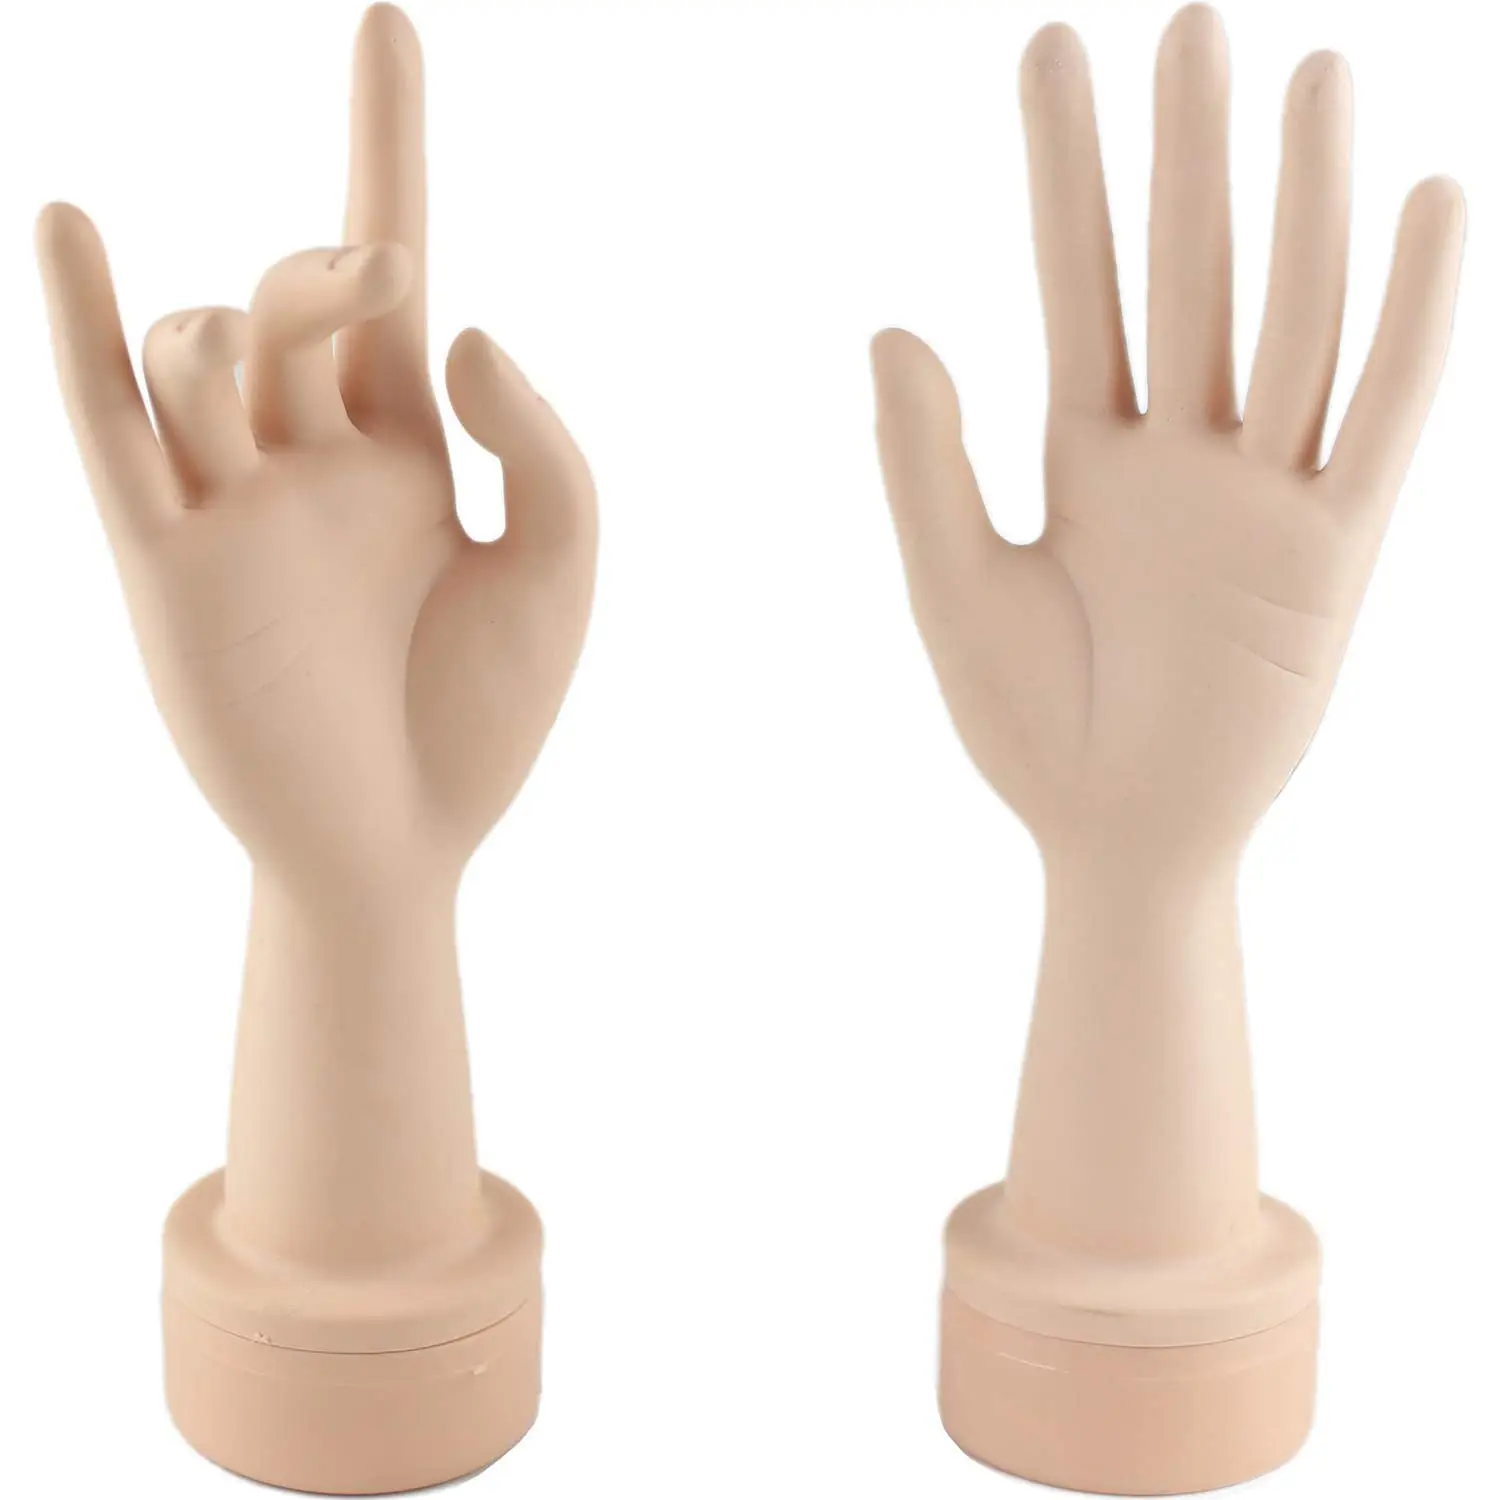 Üben Sie flexible Schaufenster puppe Hand nagel anzeige mit weichen Fingern und üben Sie Maniküre nägel Hand durch gefälschte Hand